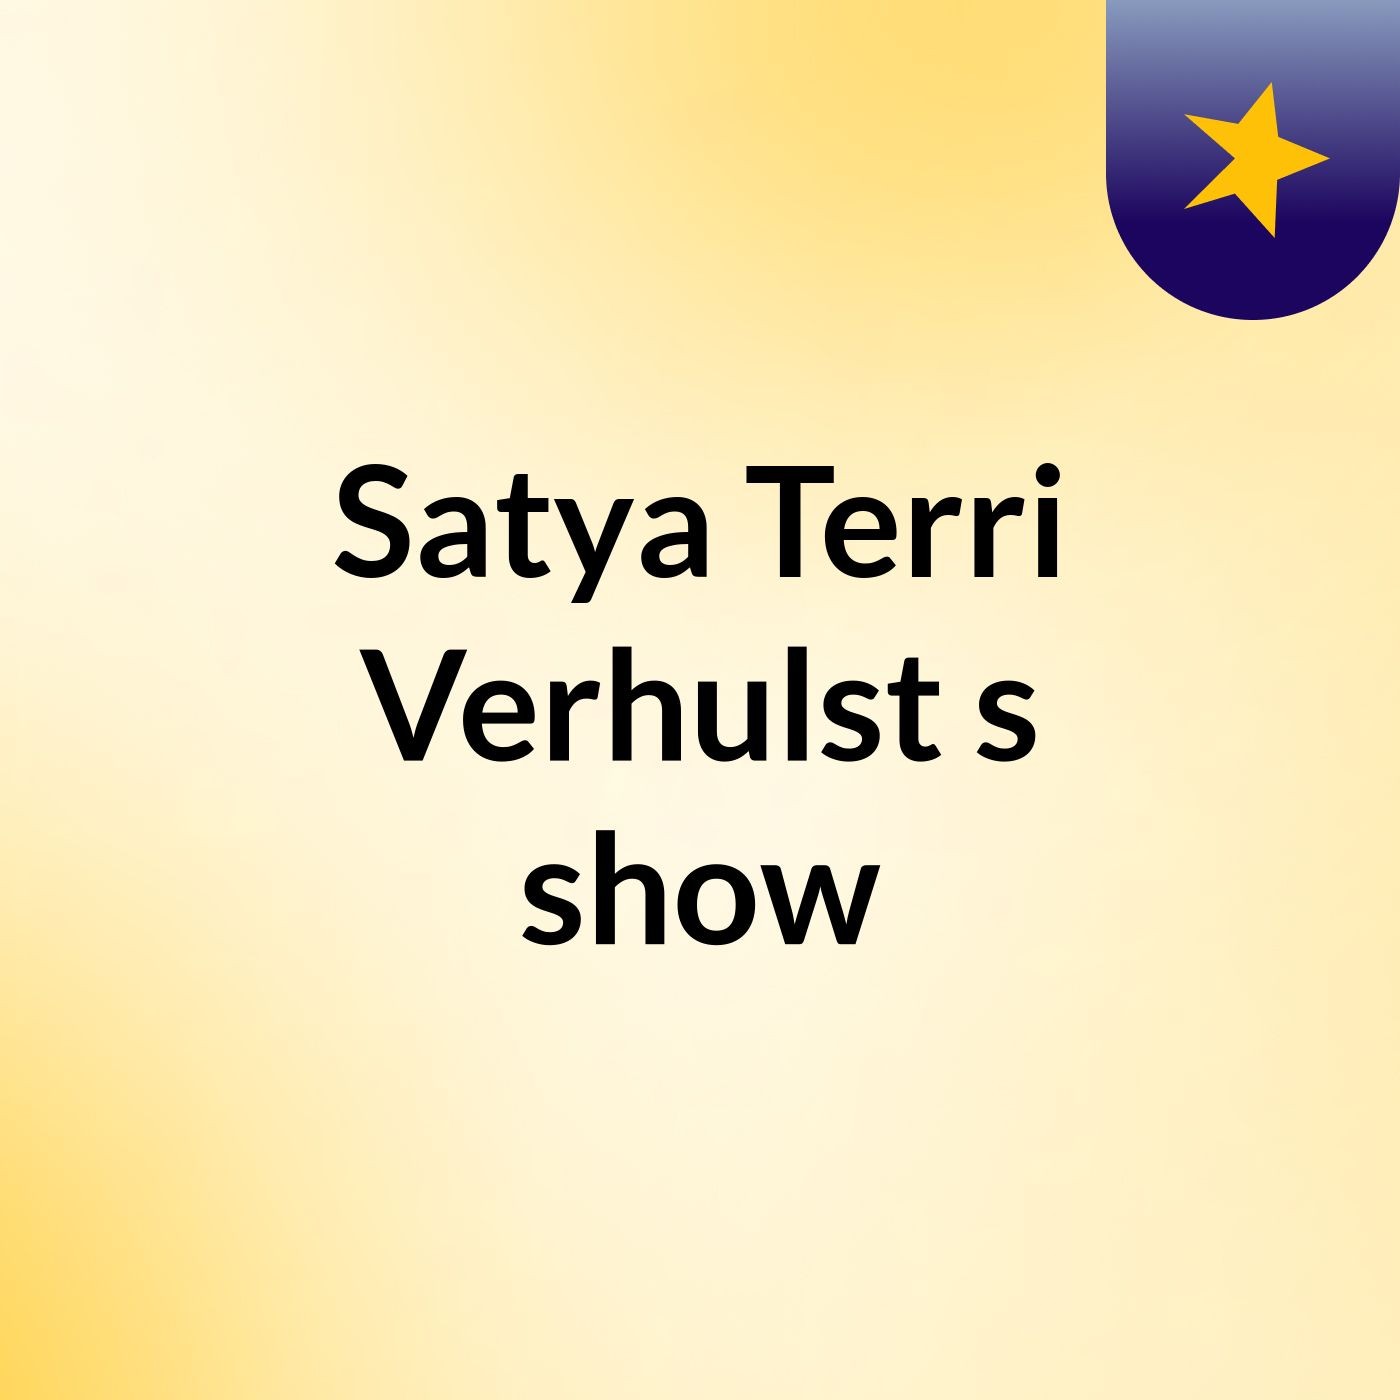 Satya Terri Verhulst's show